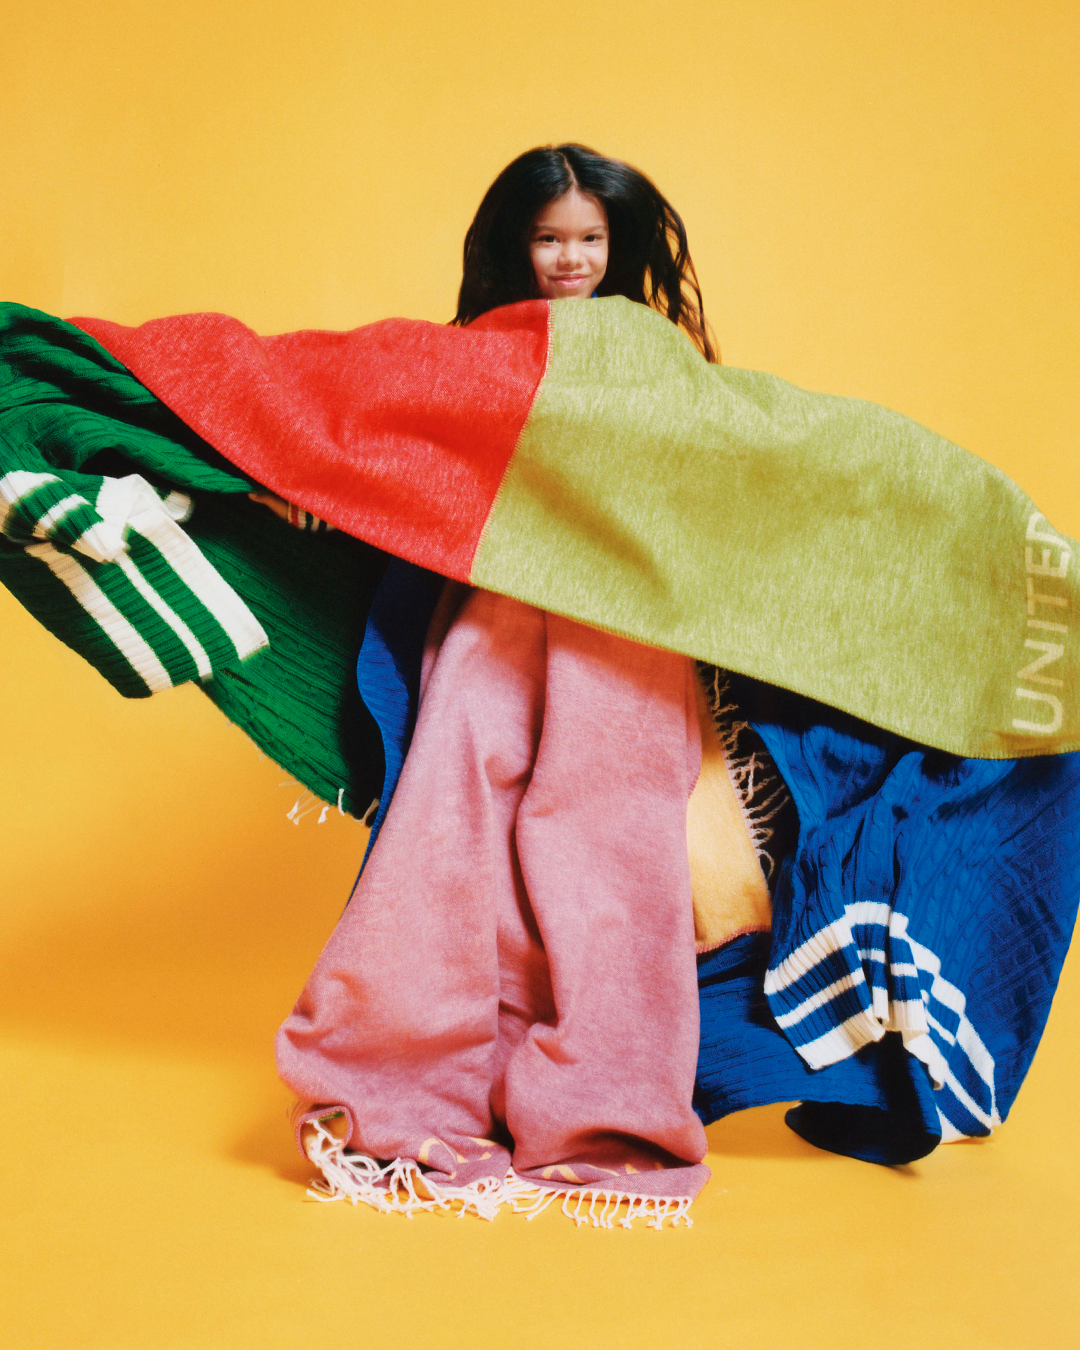 La colección para el hogar incluye sábanas, juegos de cama y suaves mantas en colores alegres. 